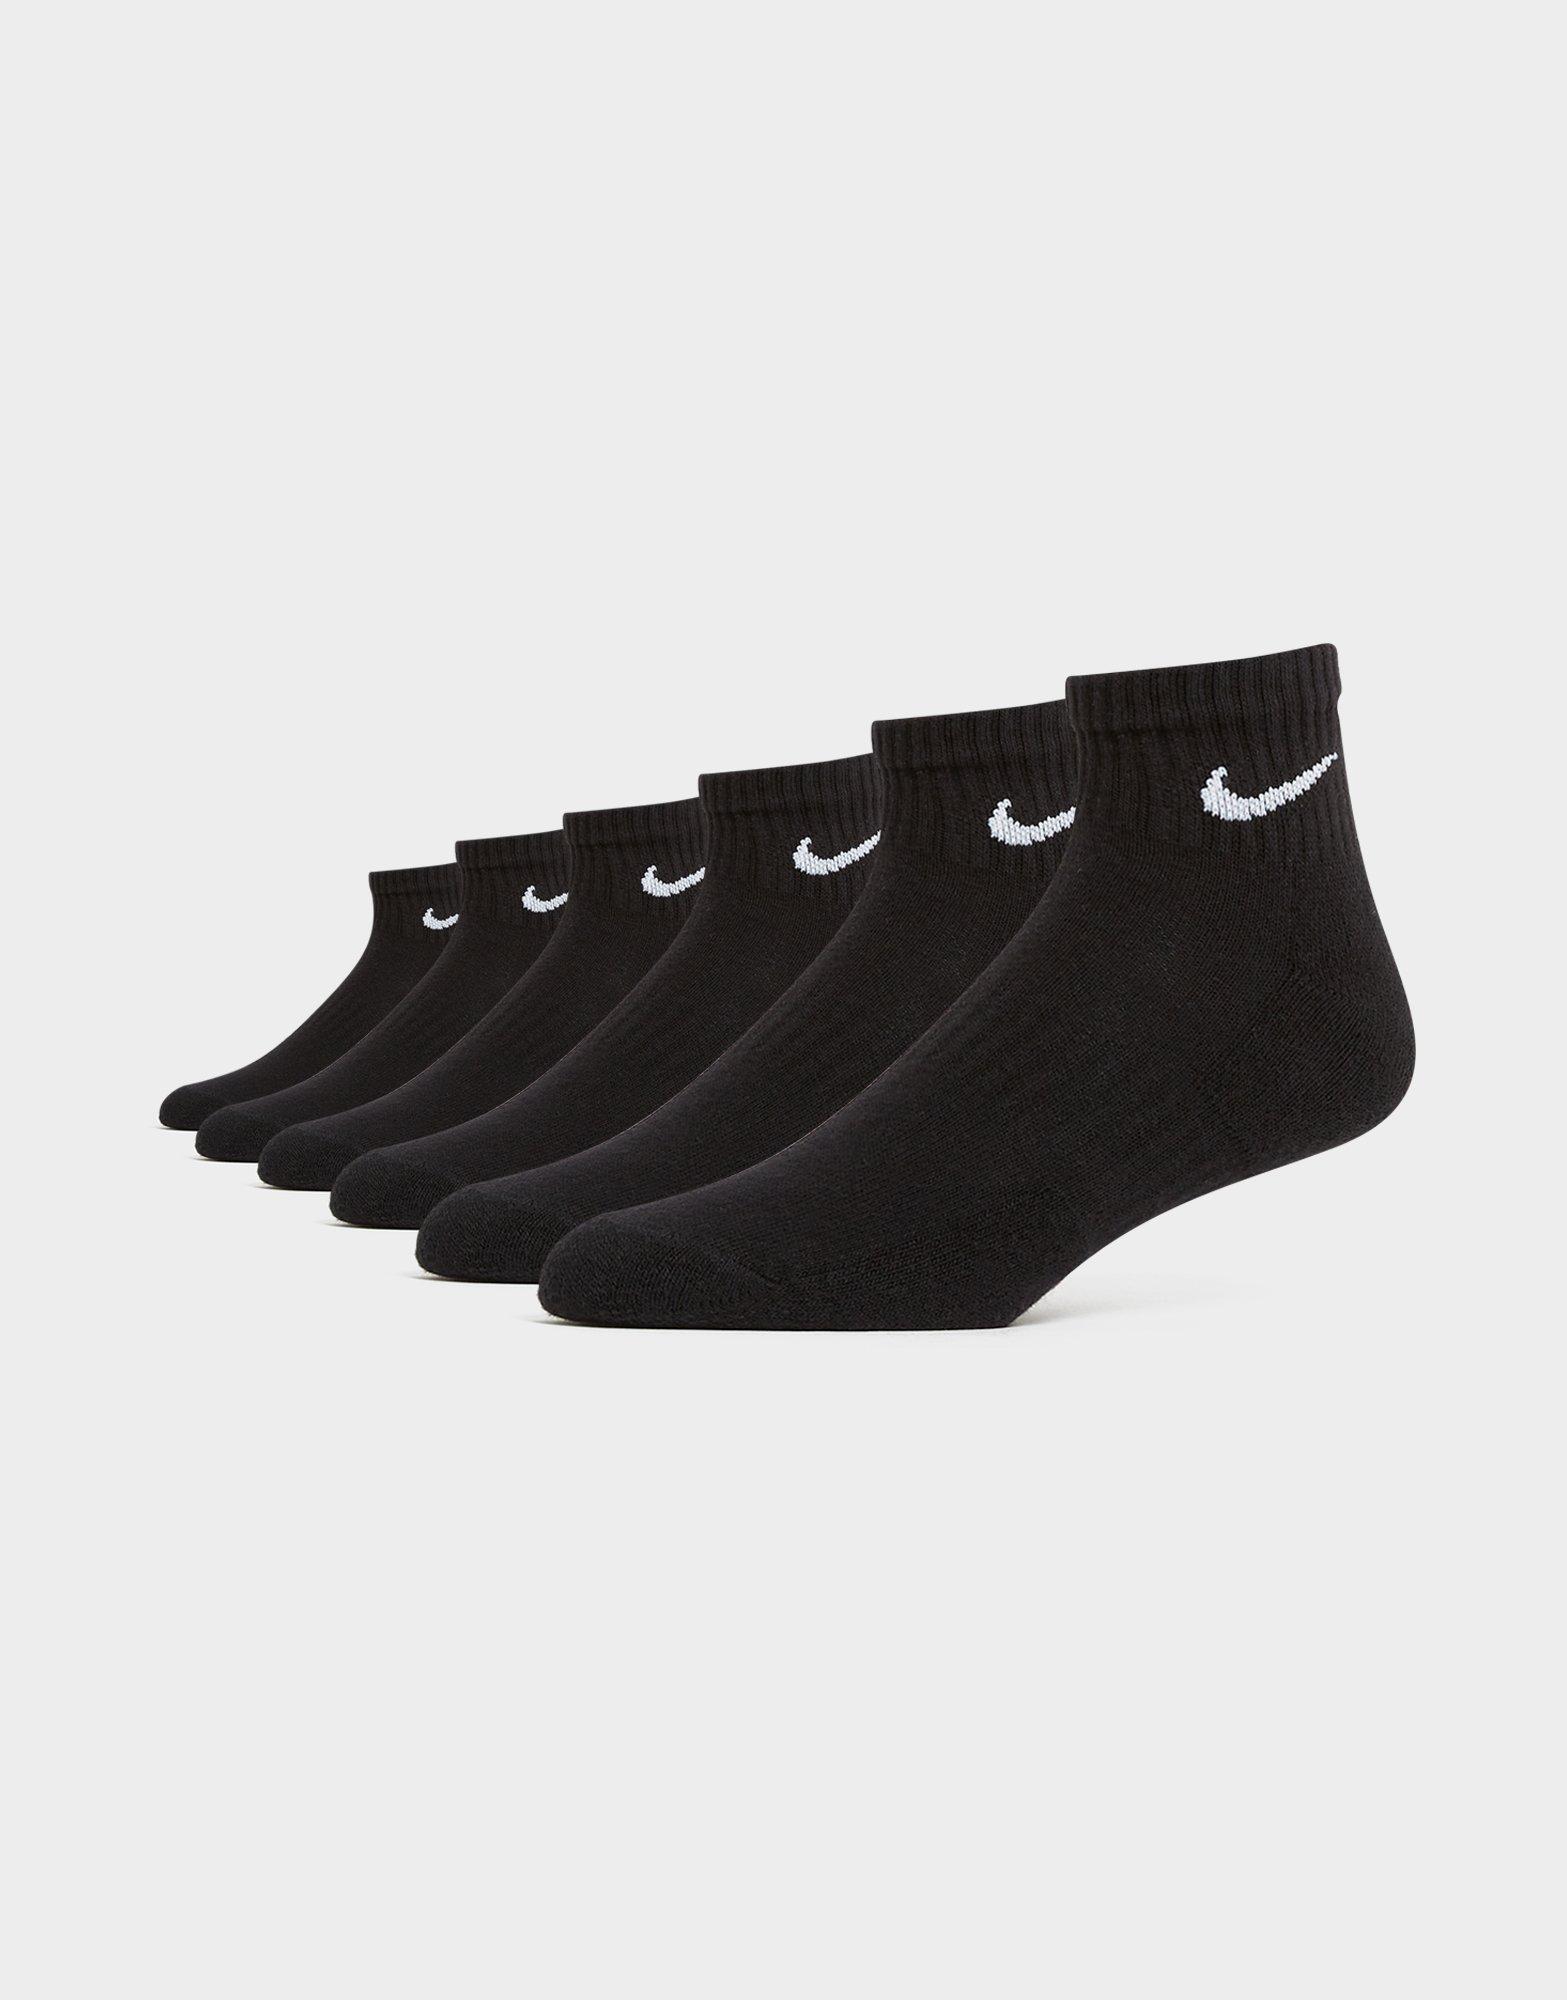 Nike white 6 pack trainer socks